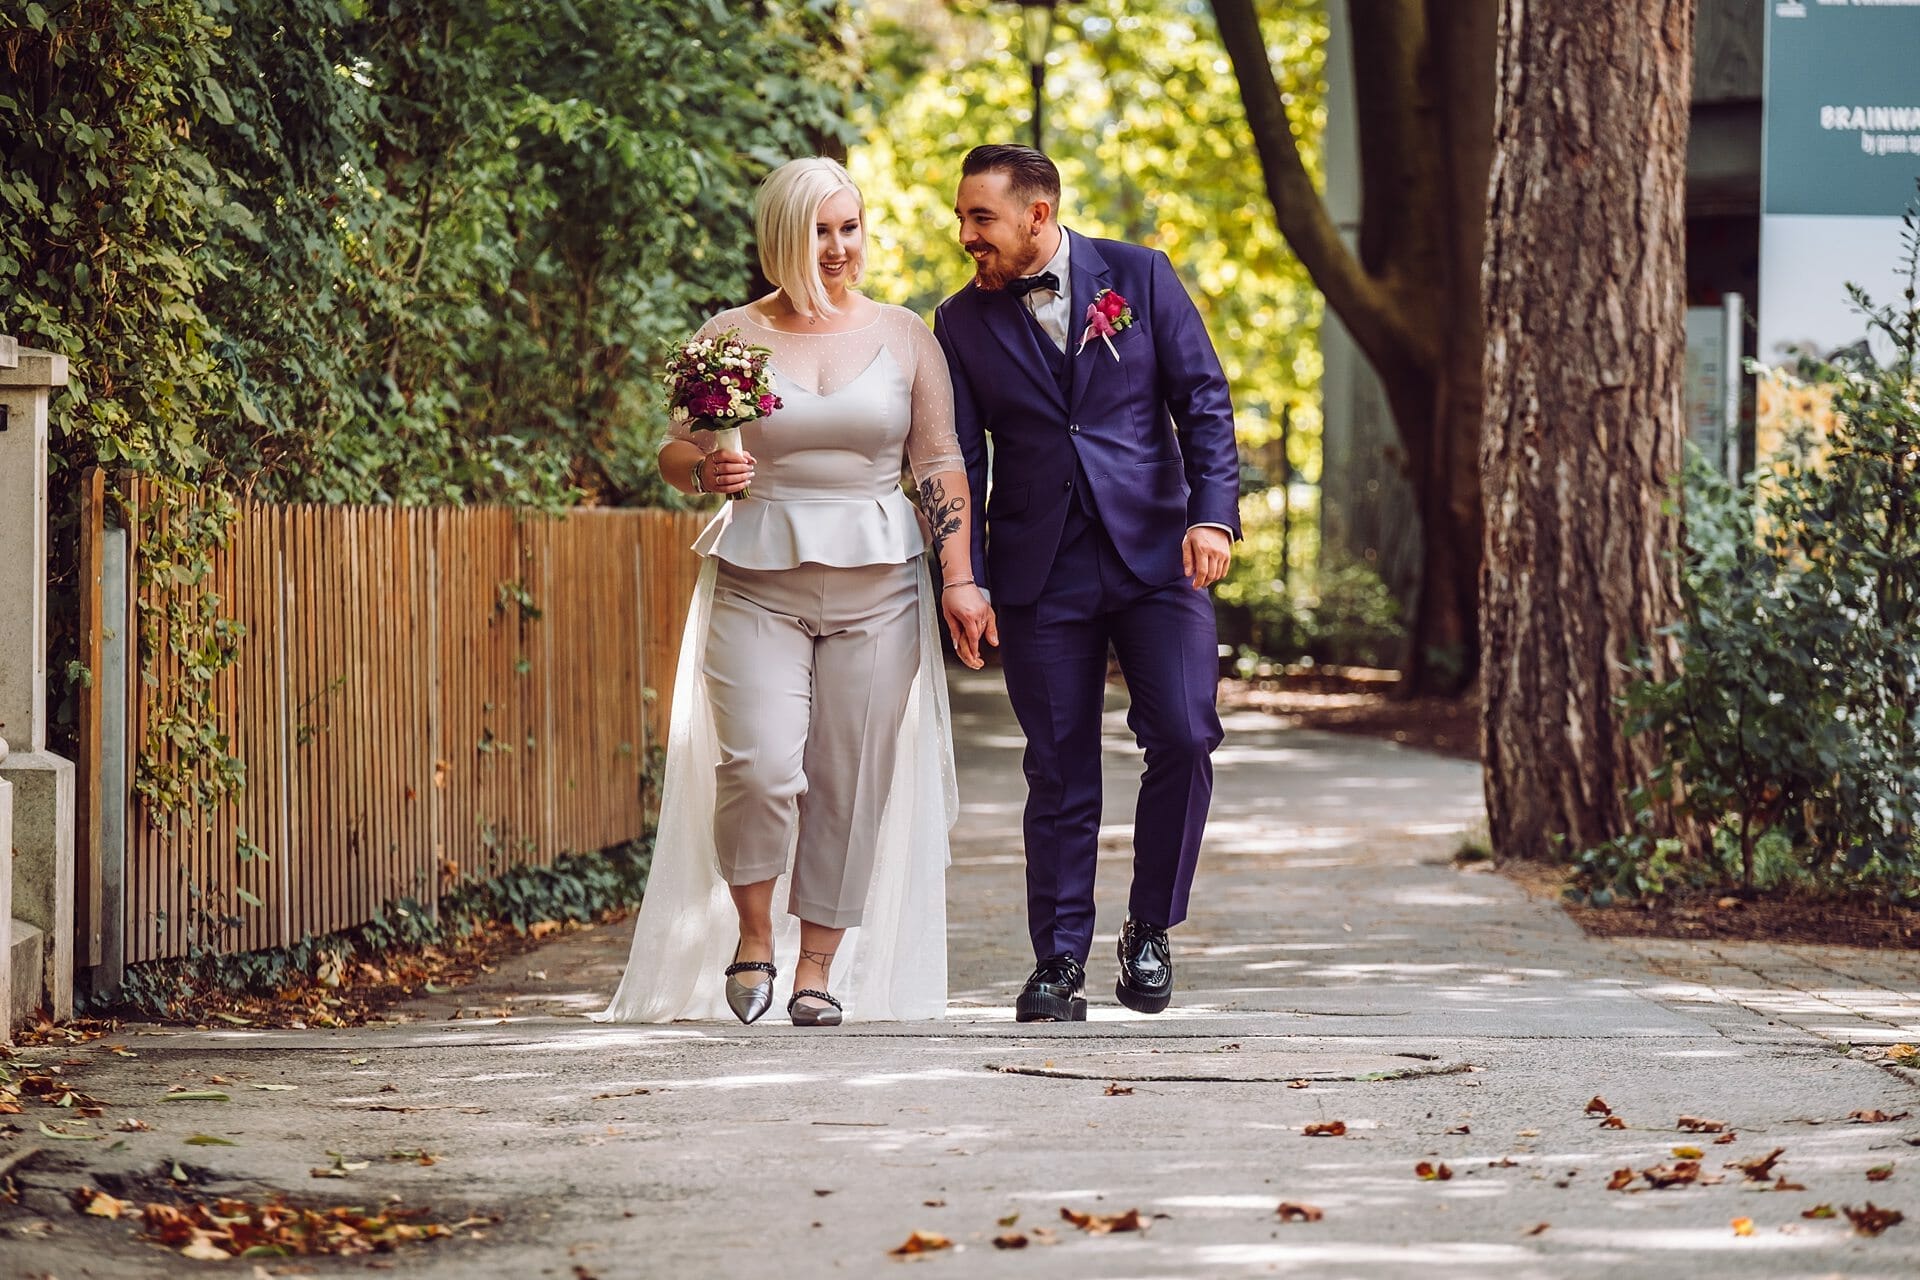 Eine Braut und ein Bräutigam gehen einen Bürgersteig entlang.